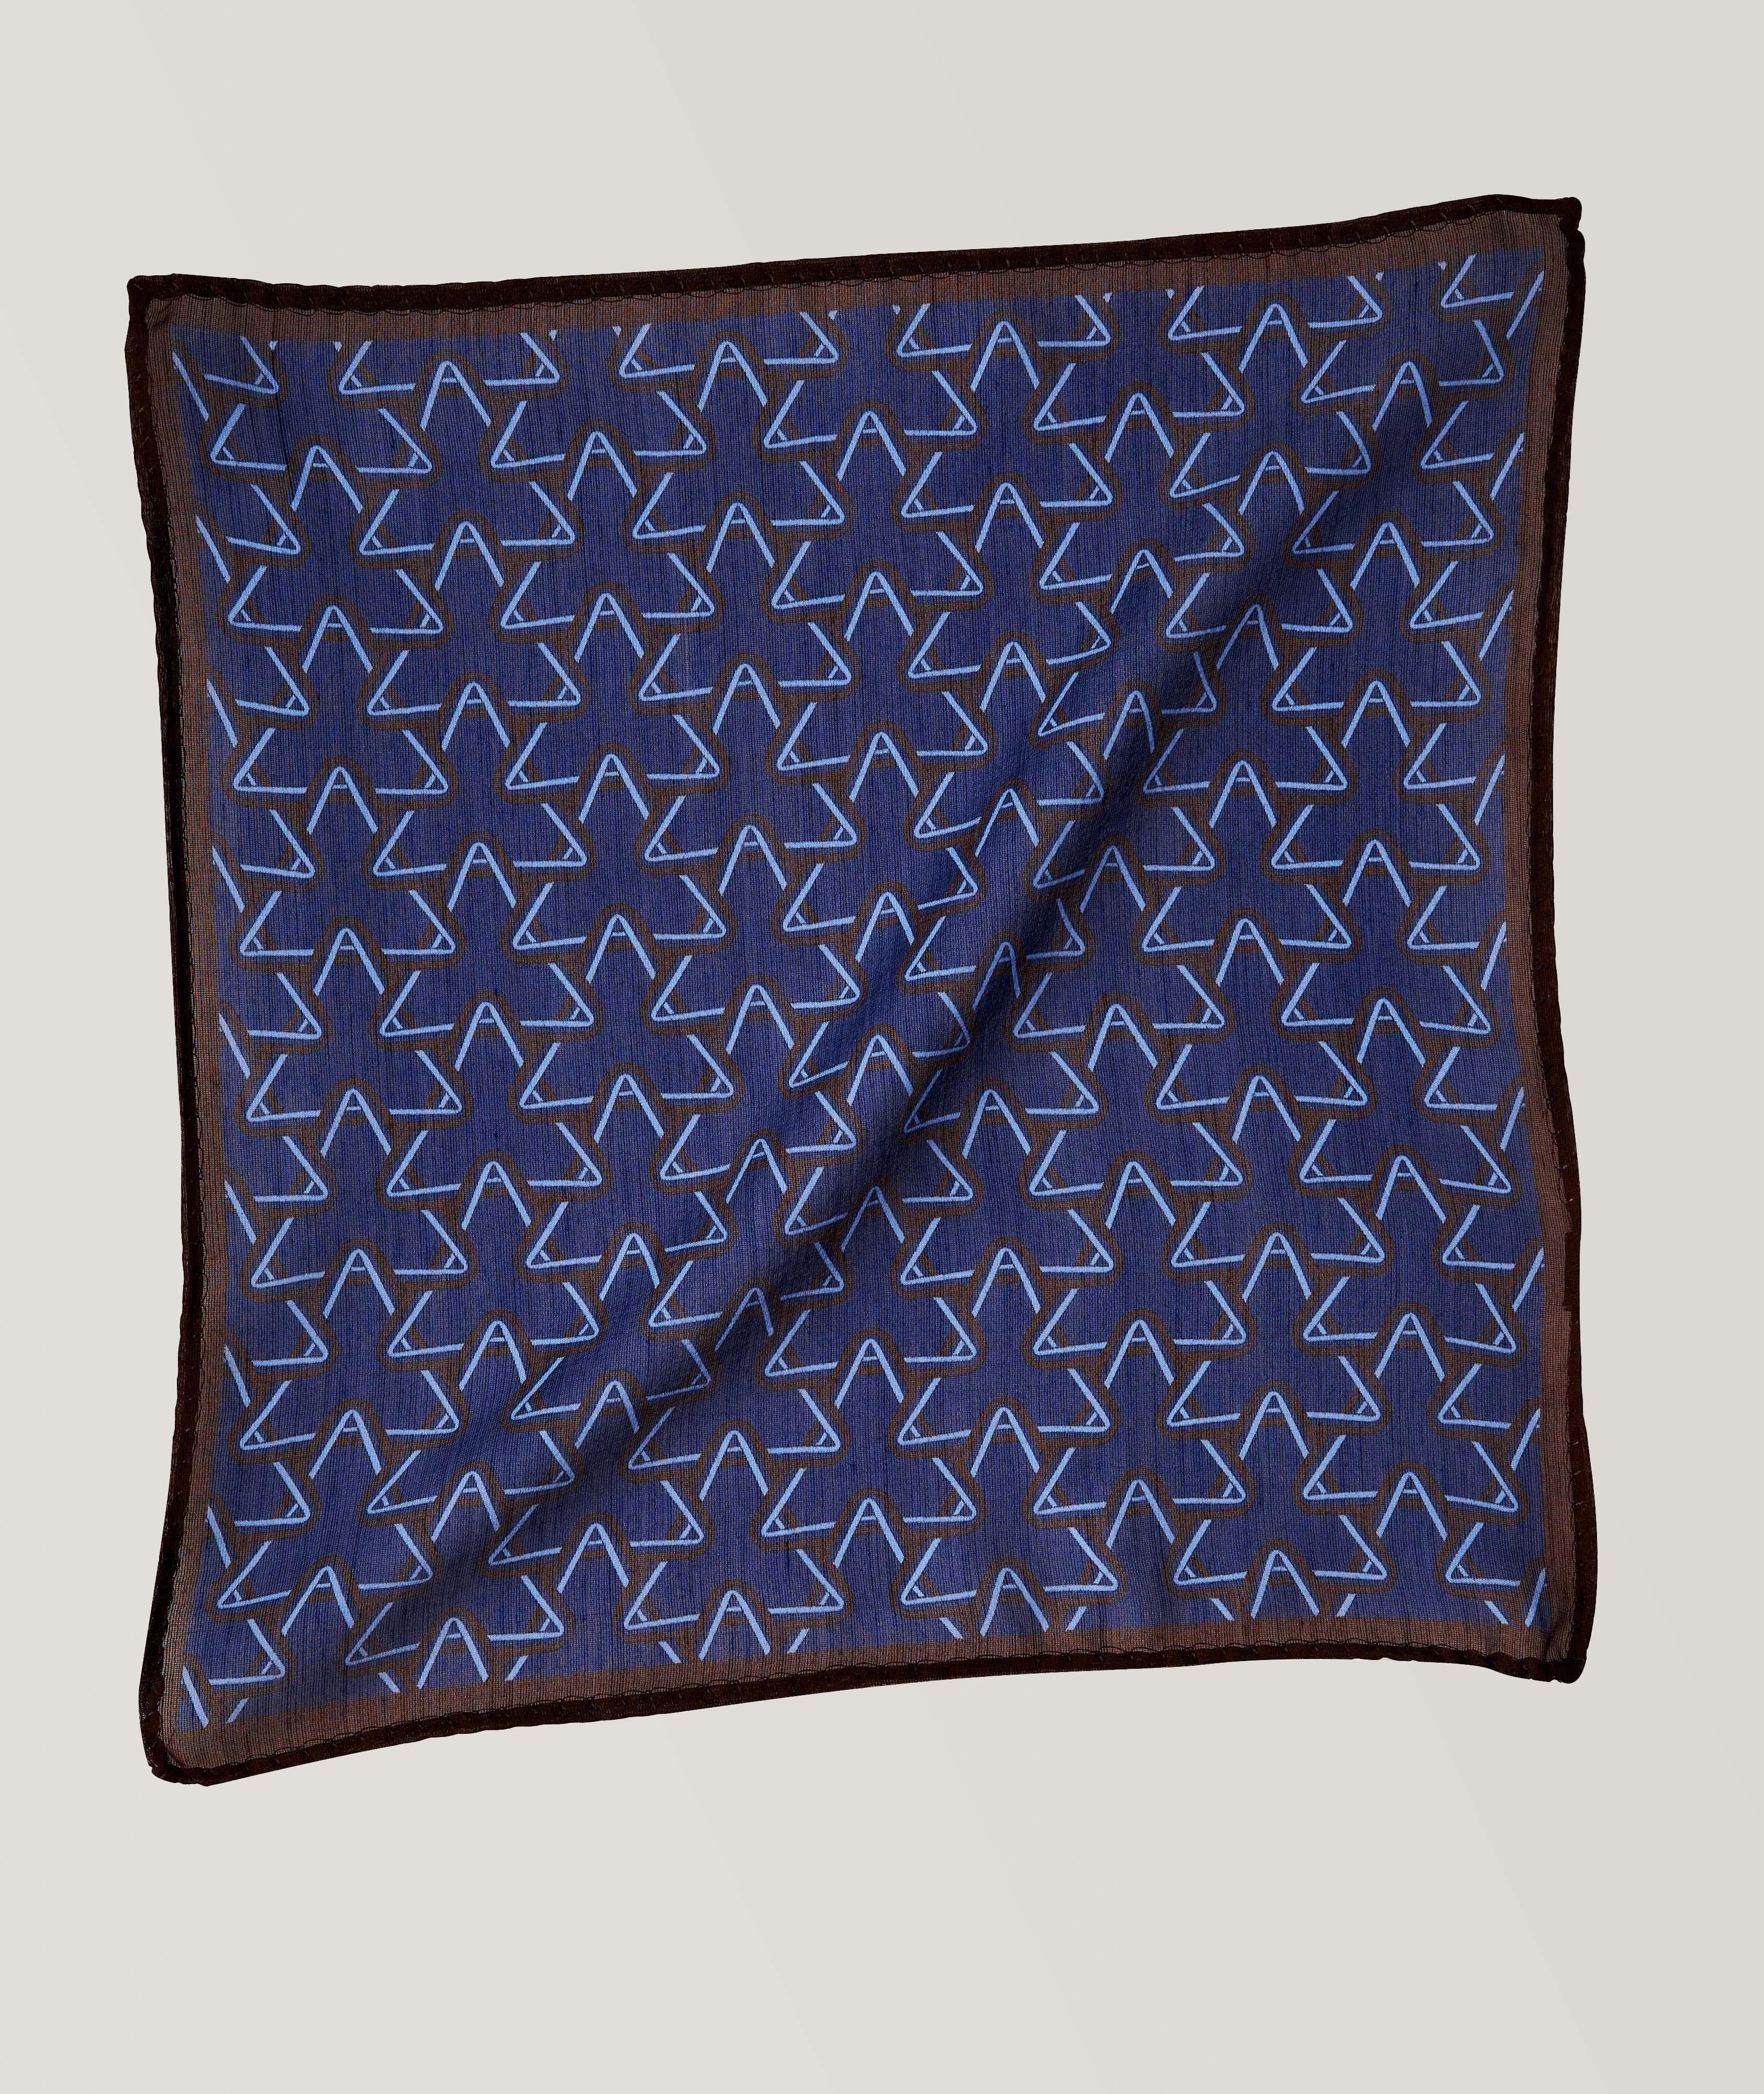 Mouchoir de poche en soie et laine à motif géométrique image 0